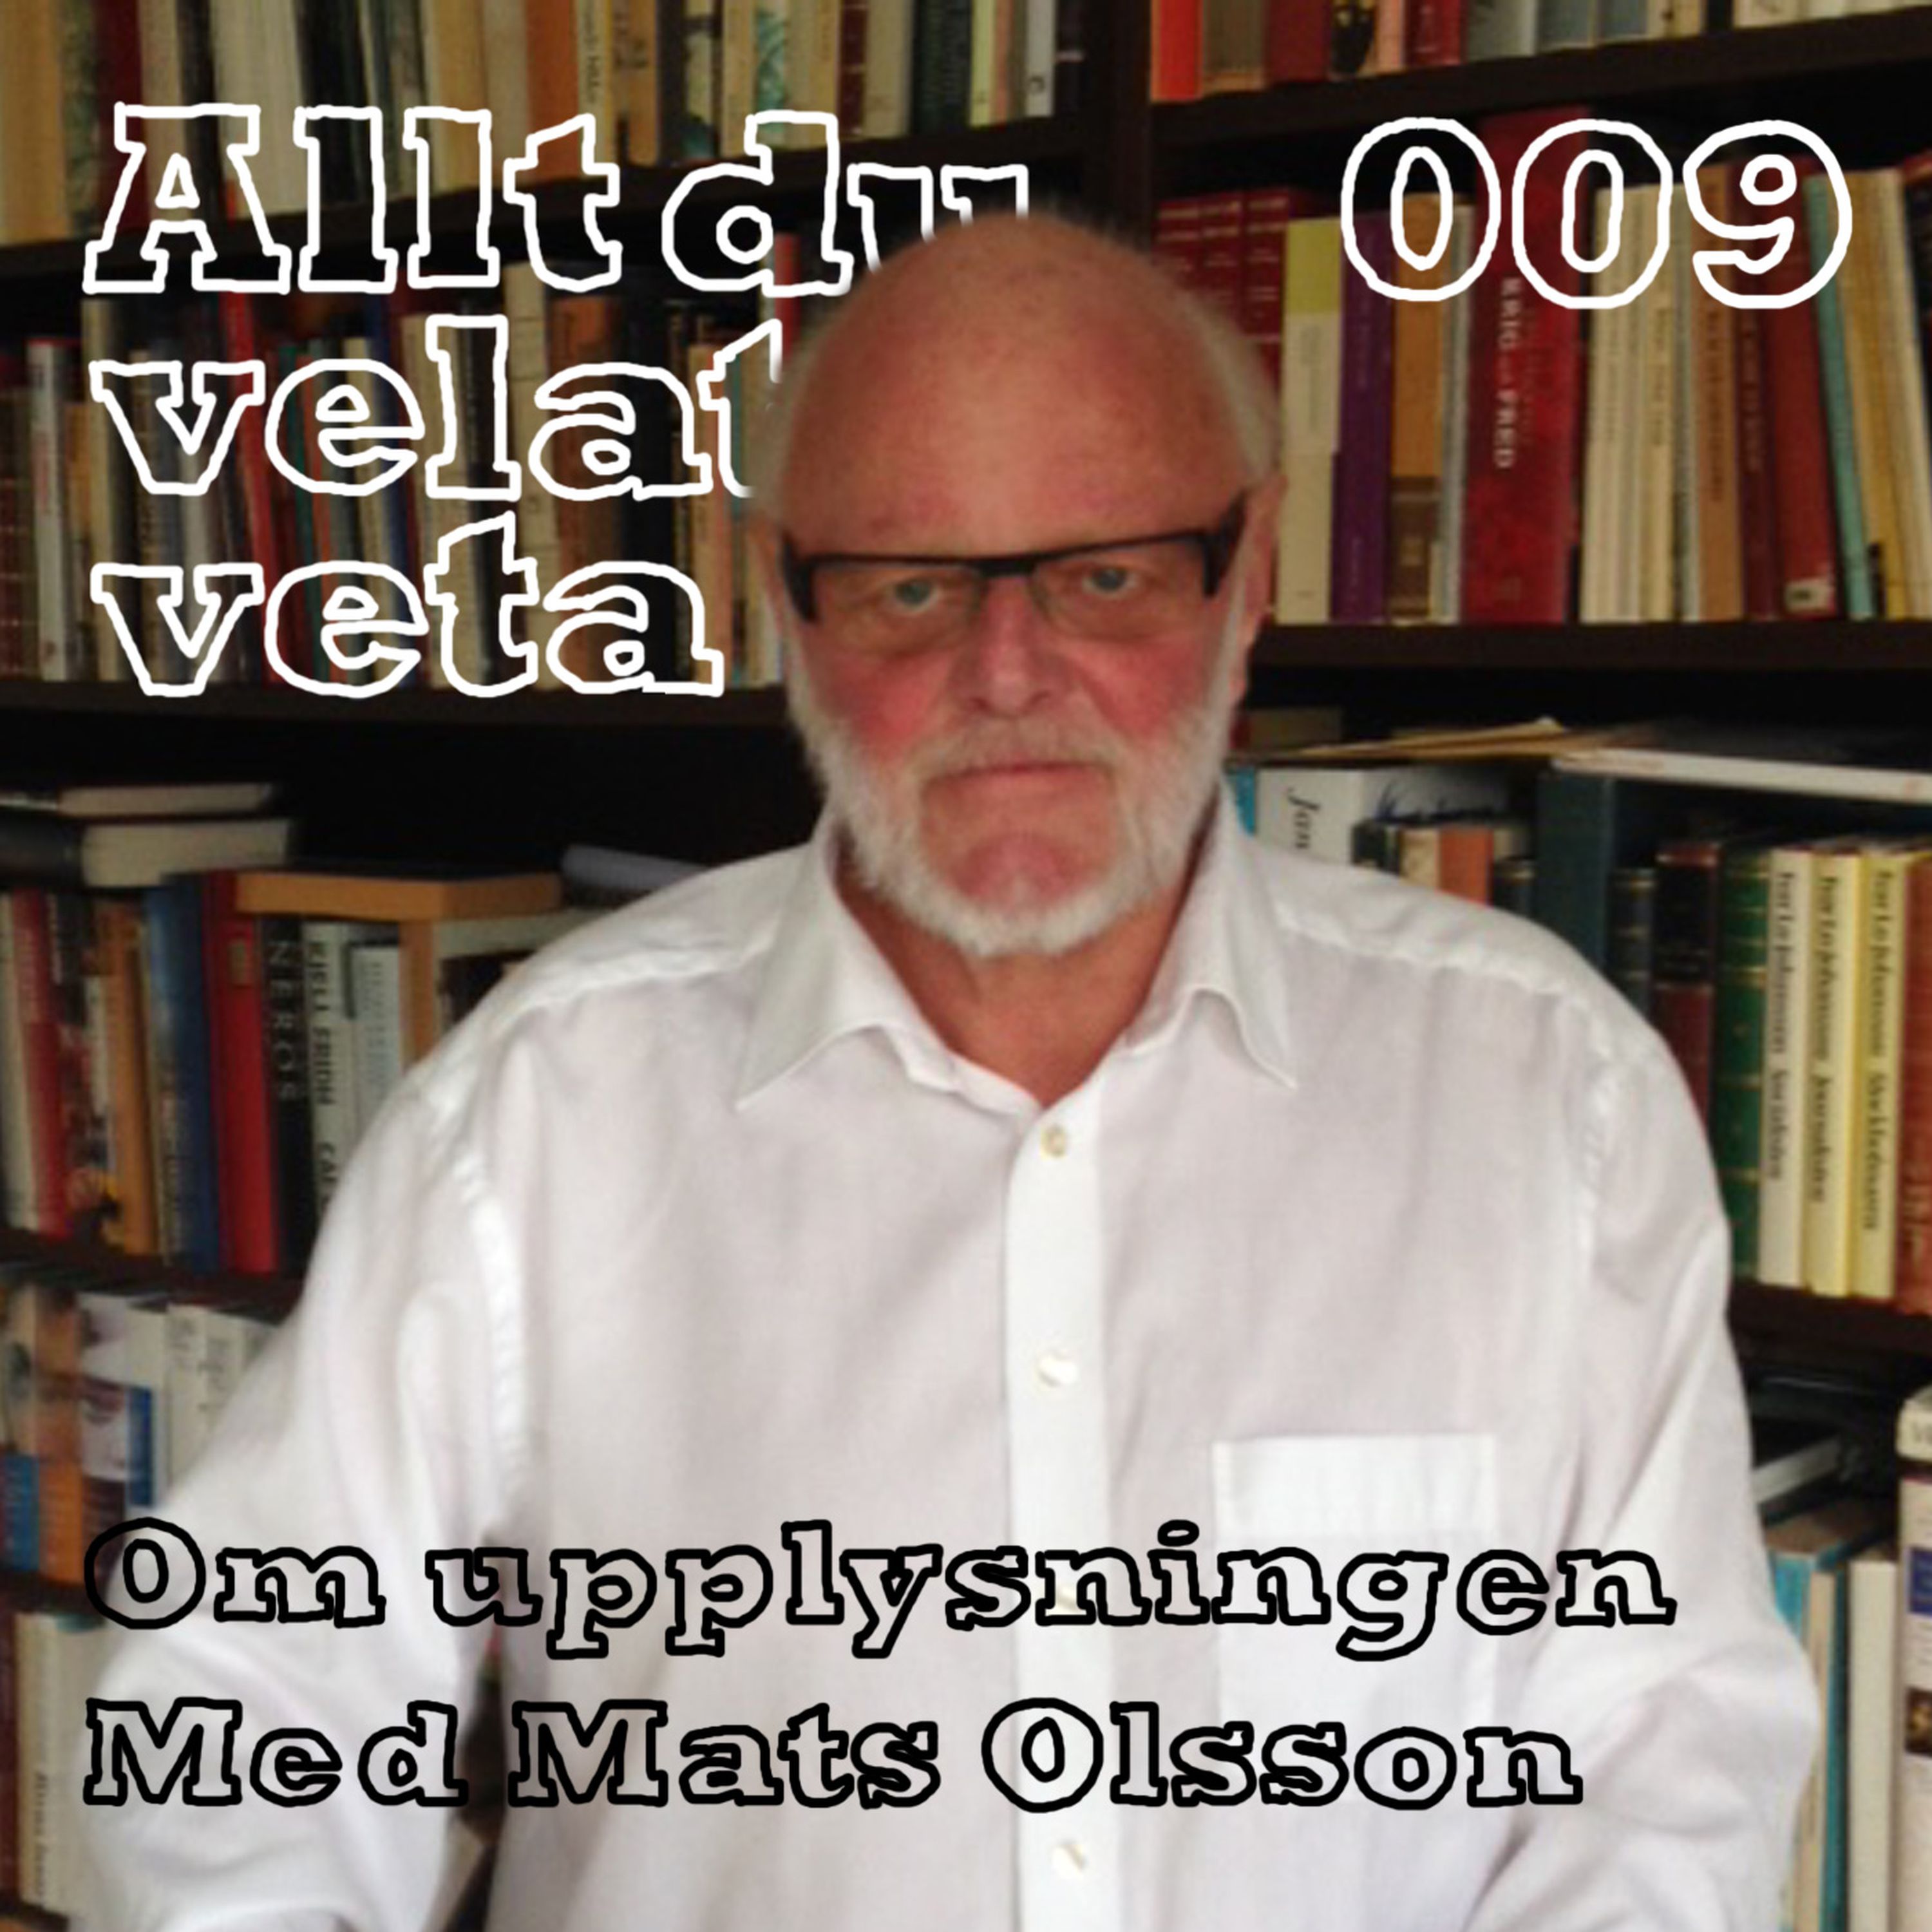 009 Om upplysningen med Mats Olsson